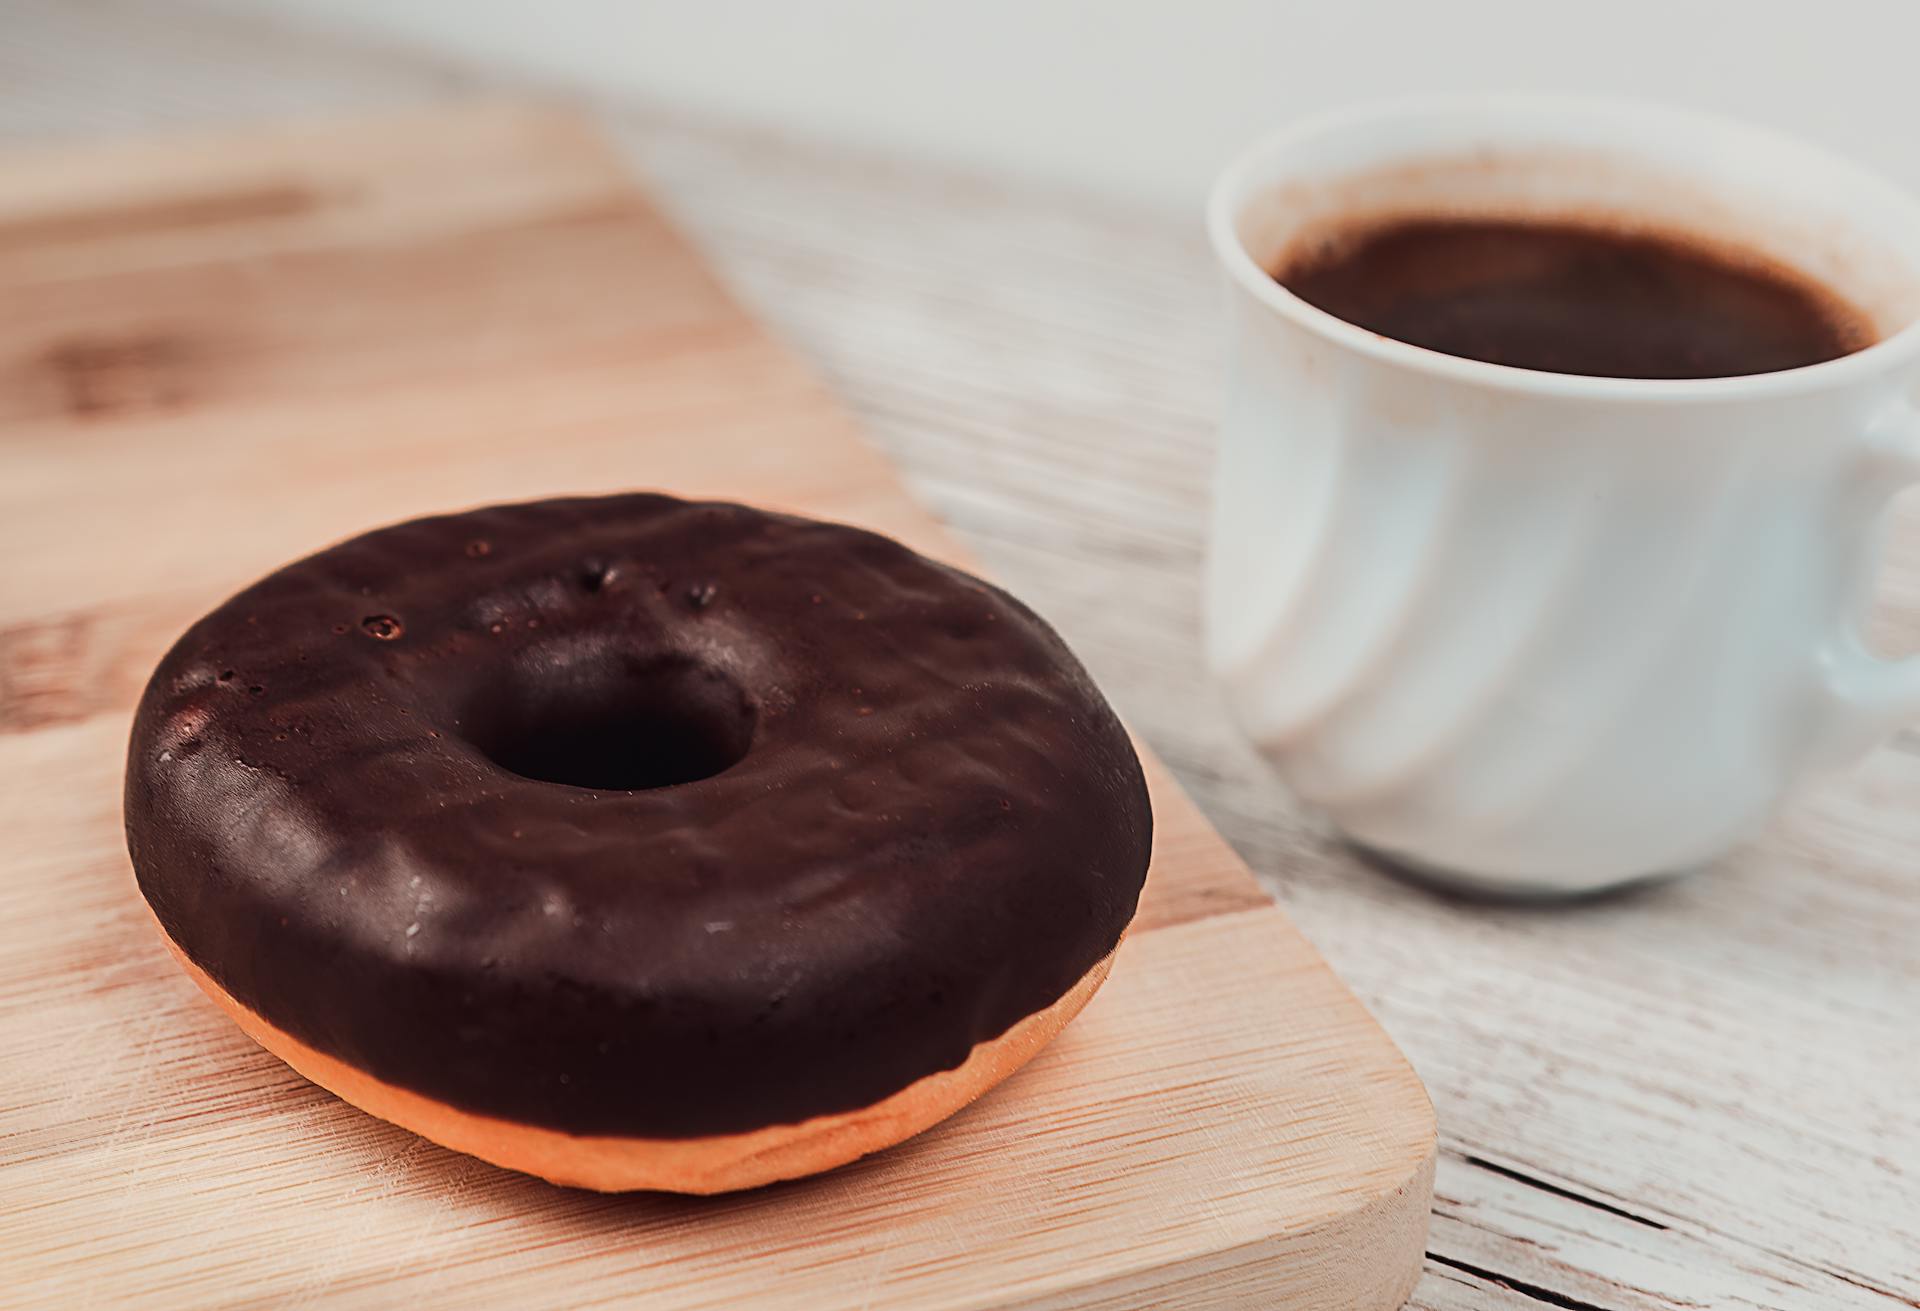 Schokoladendonut und Kaffee | Quelle: Pexels